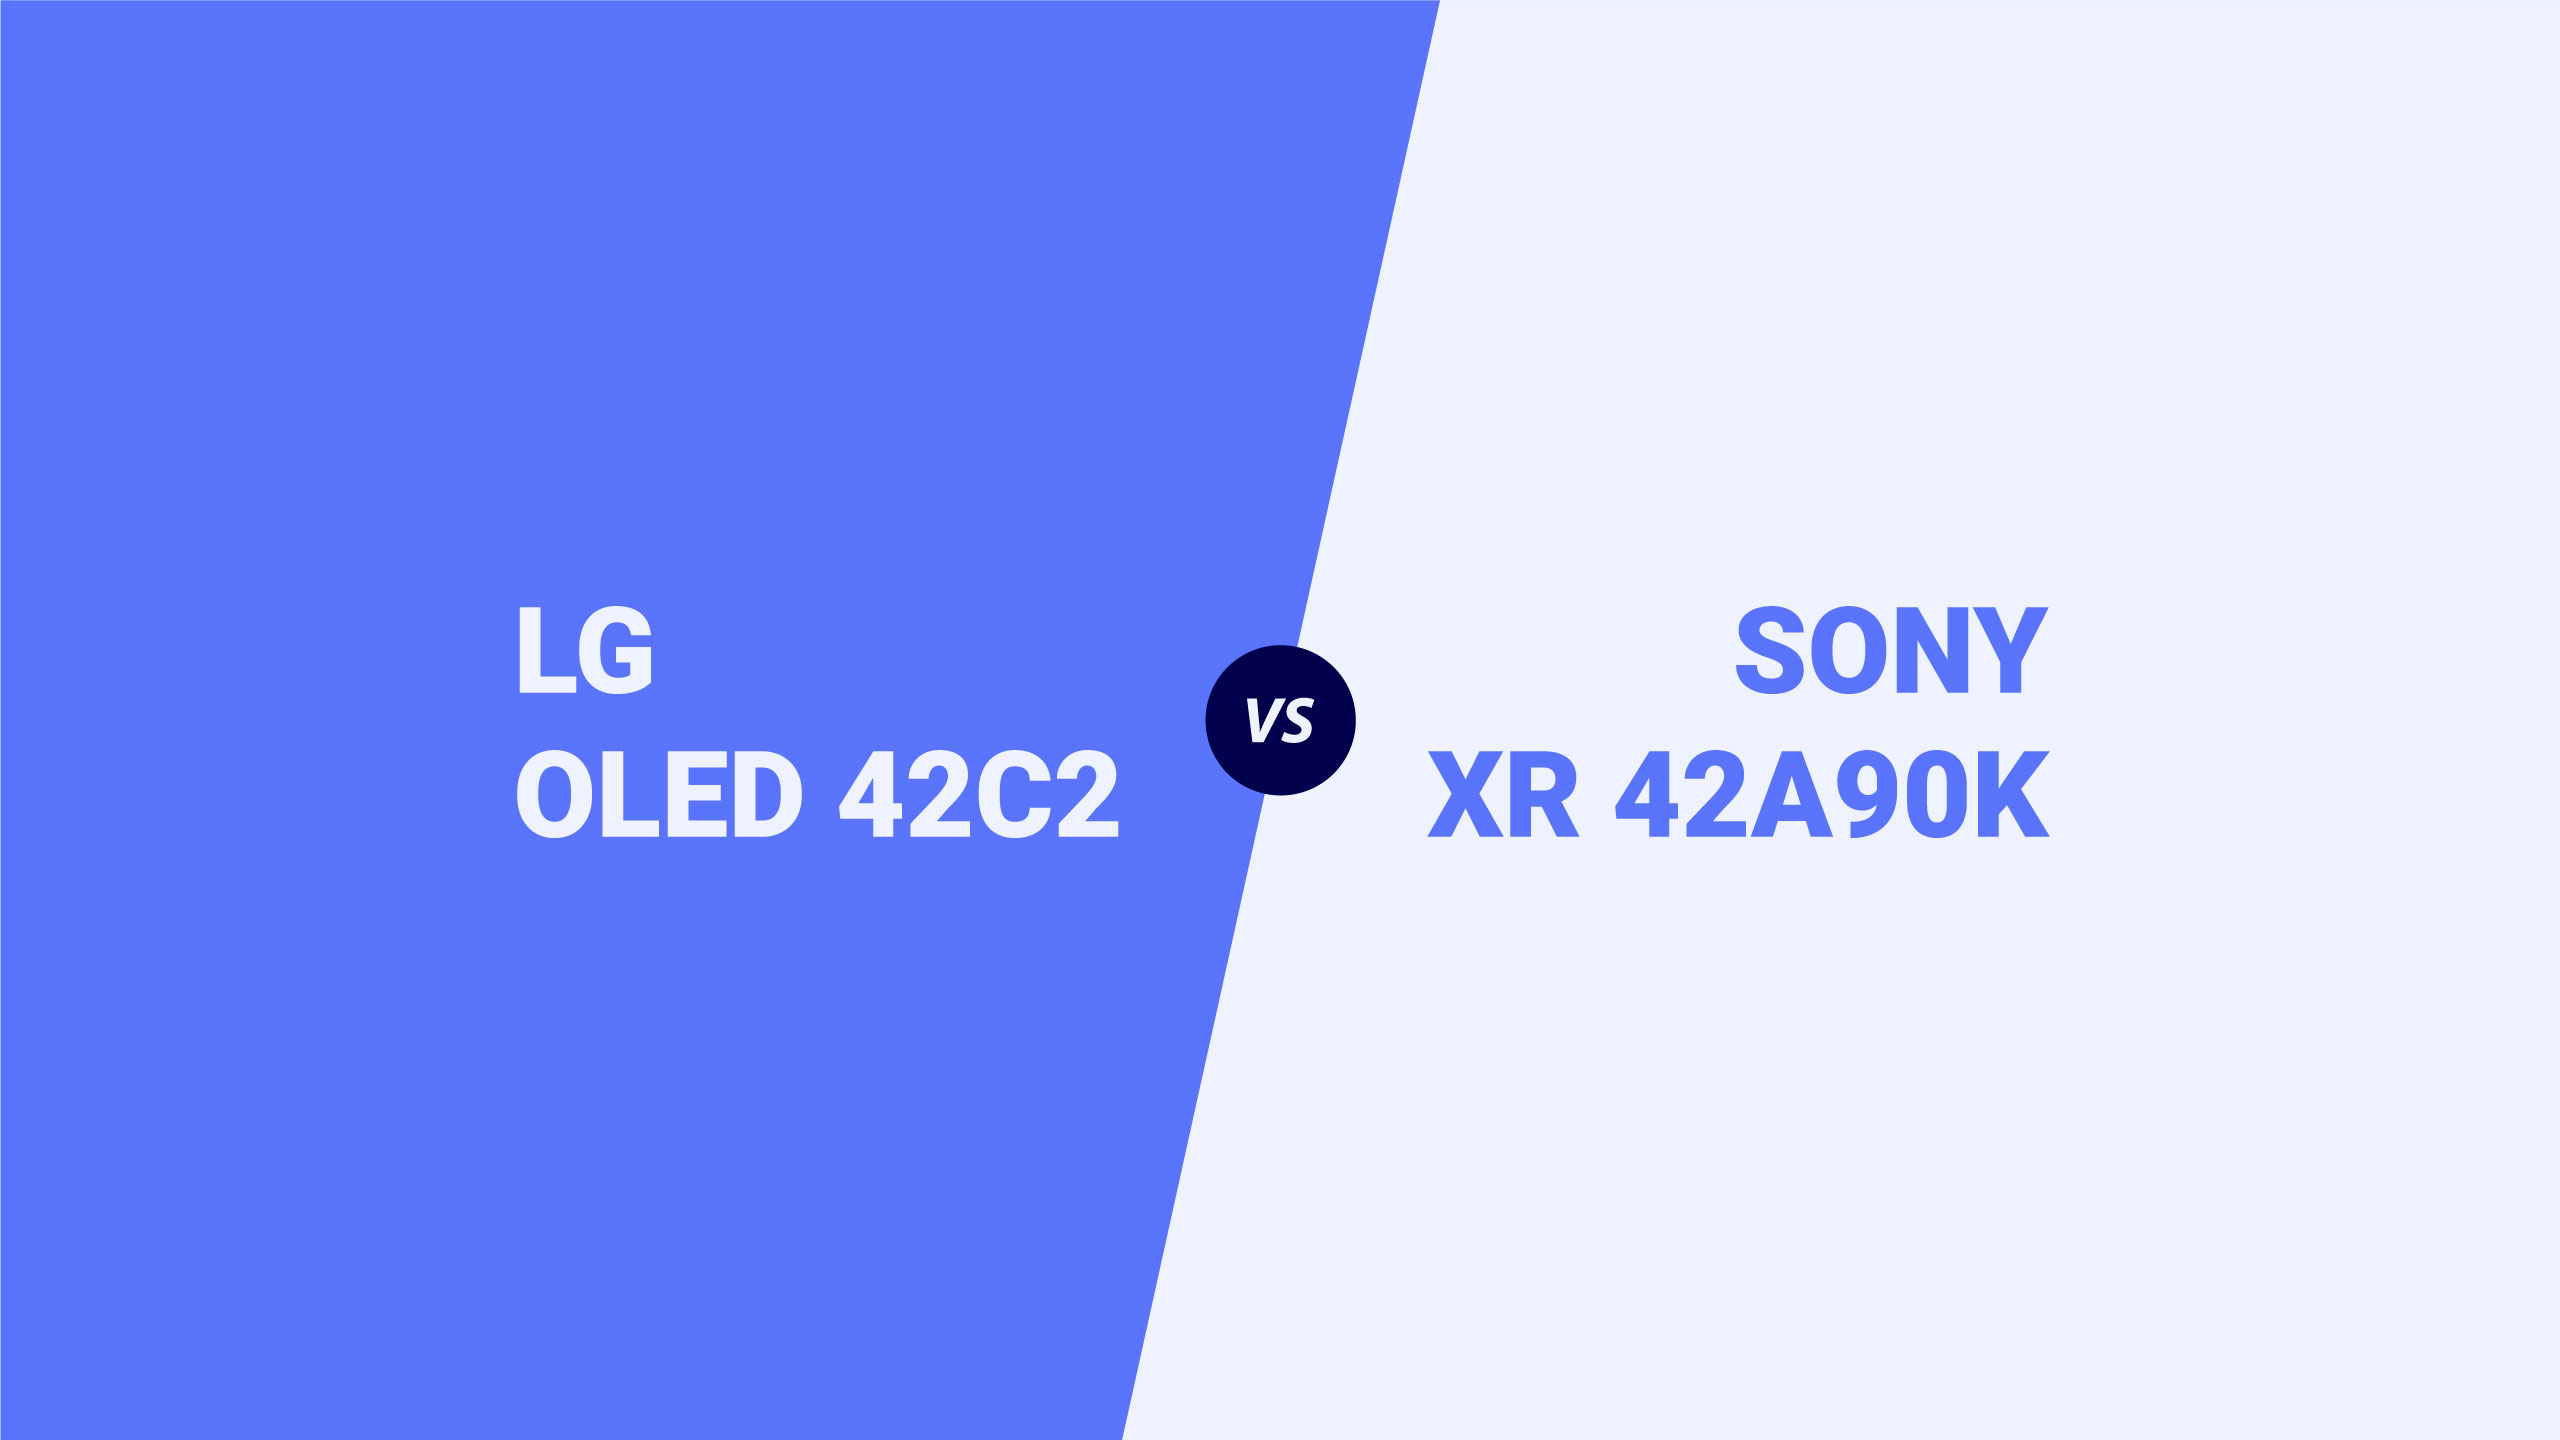 Сравнительный обзор телевизоров LG OLED 42C2 и SONY XR 42A90K